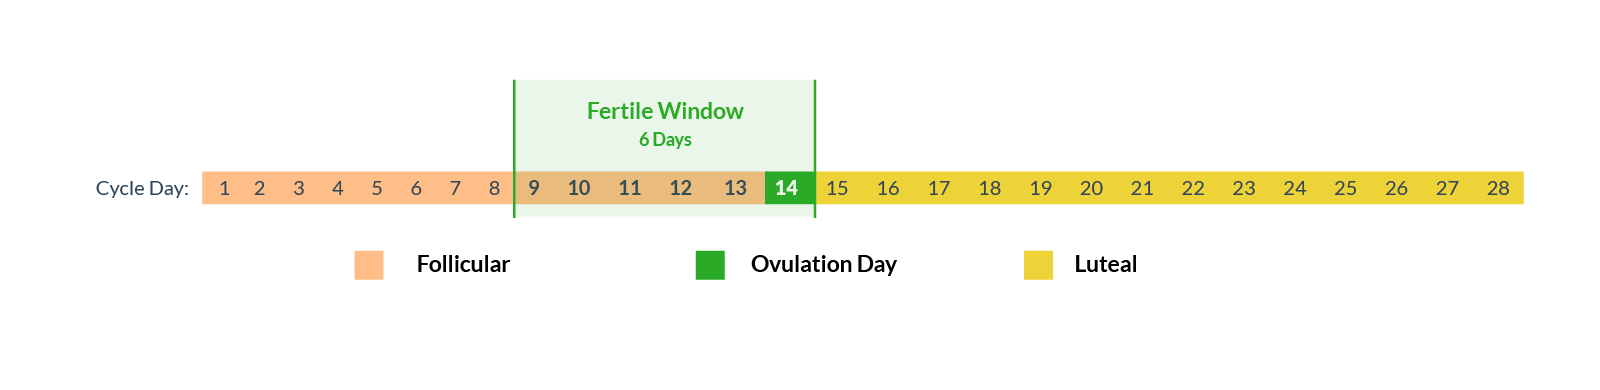 Fertile window ovulation